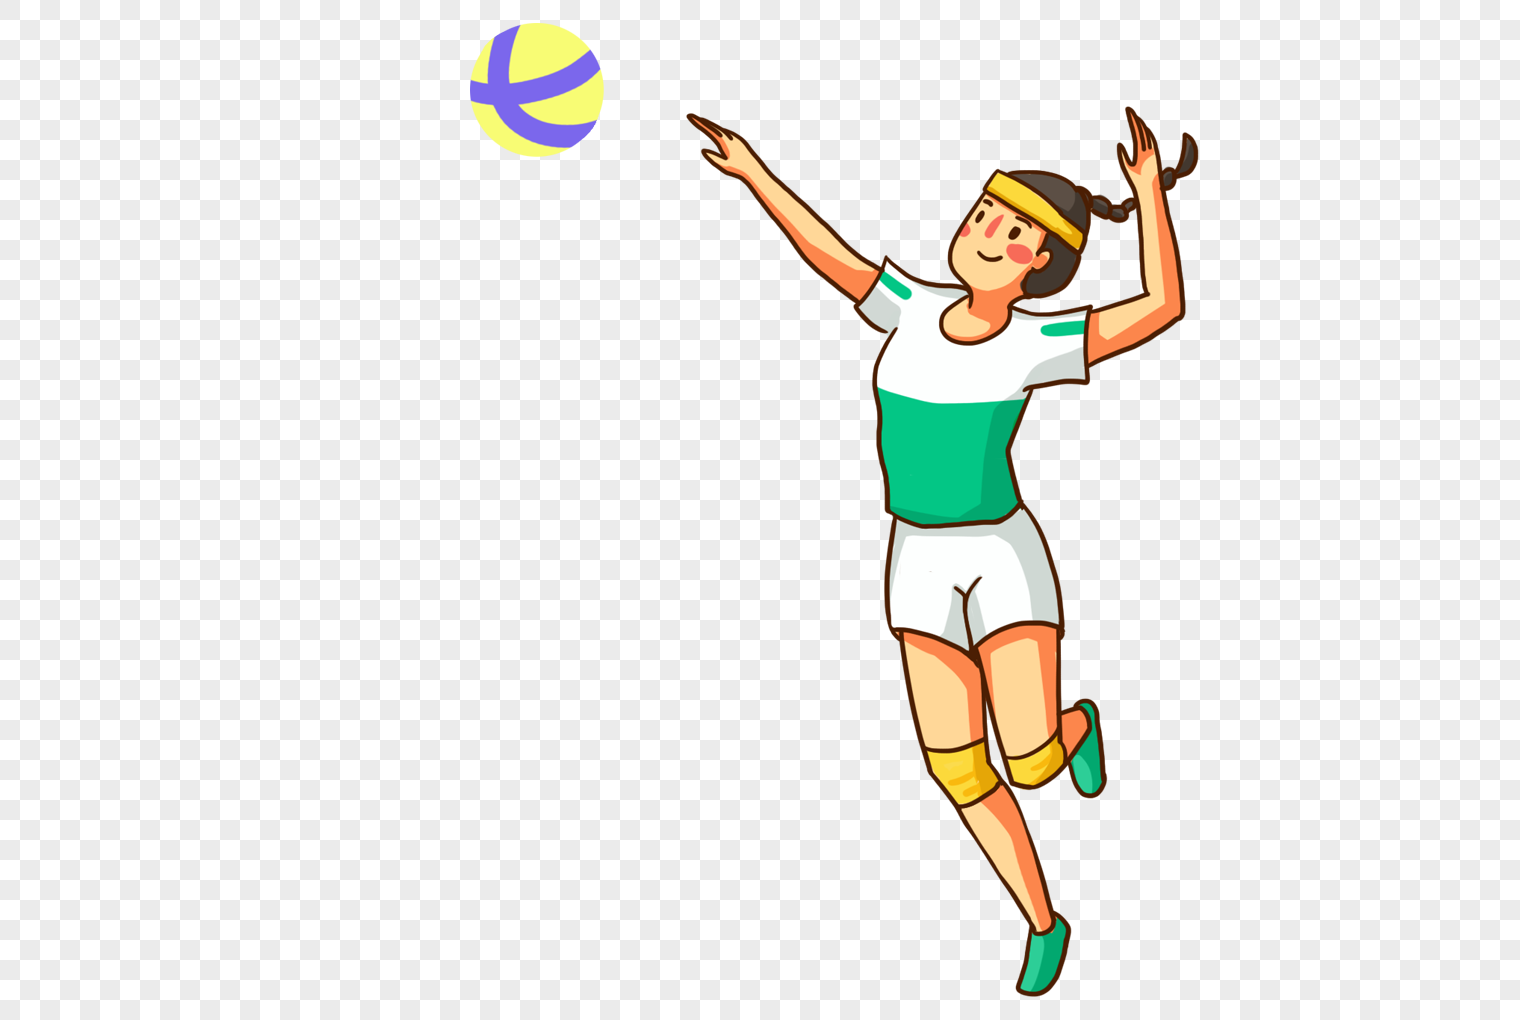 Картинка волейбол для детей на прозрачном фоне